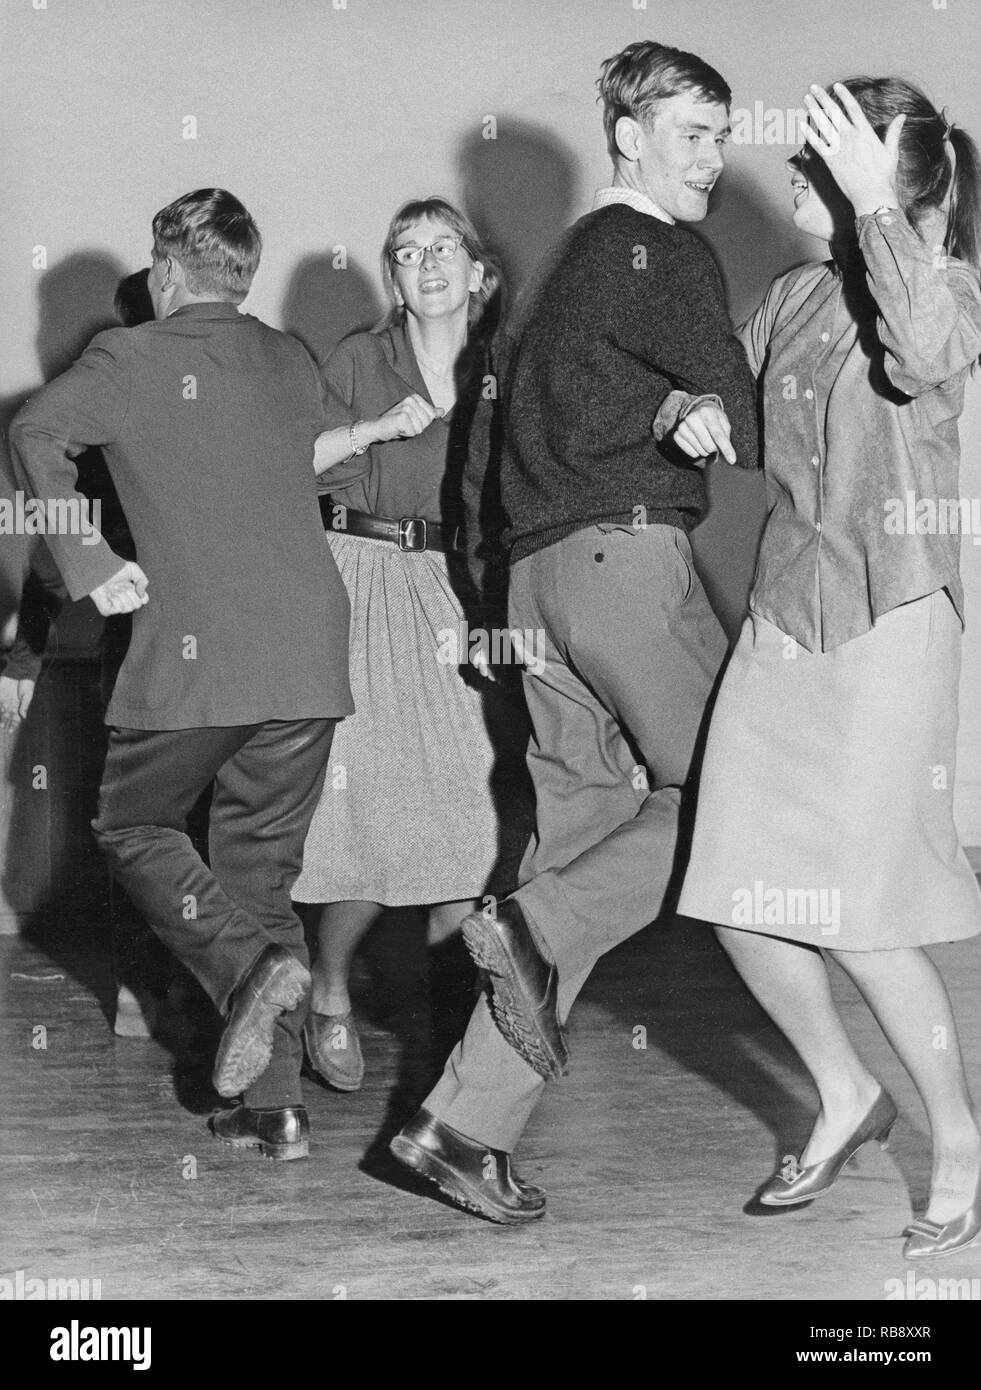 Bailando en el decenio de 1960. Dos jóvenes parejas bailando juntos y divertirse. Suecia 1960 Foto de stock